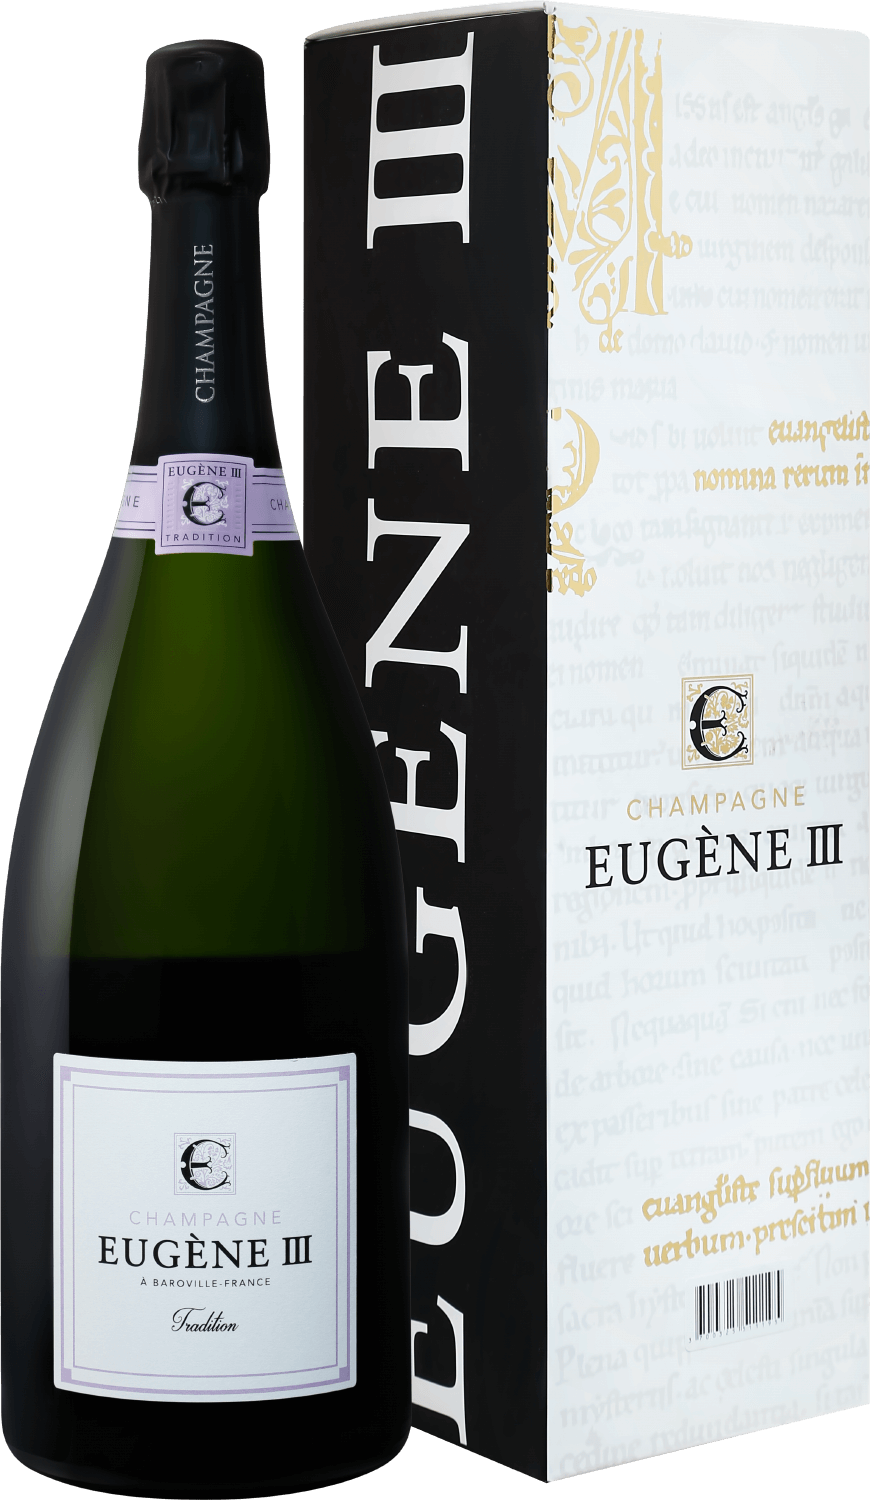 Eugene III Tradition Brut Champagne АOC Coopérative Vinicole de la Région de Baroville (gift box) barfontarc rosé brut champagne aoc coopérative vinicole de la région de baroville